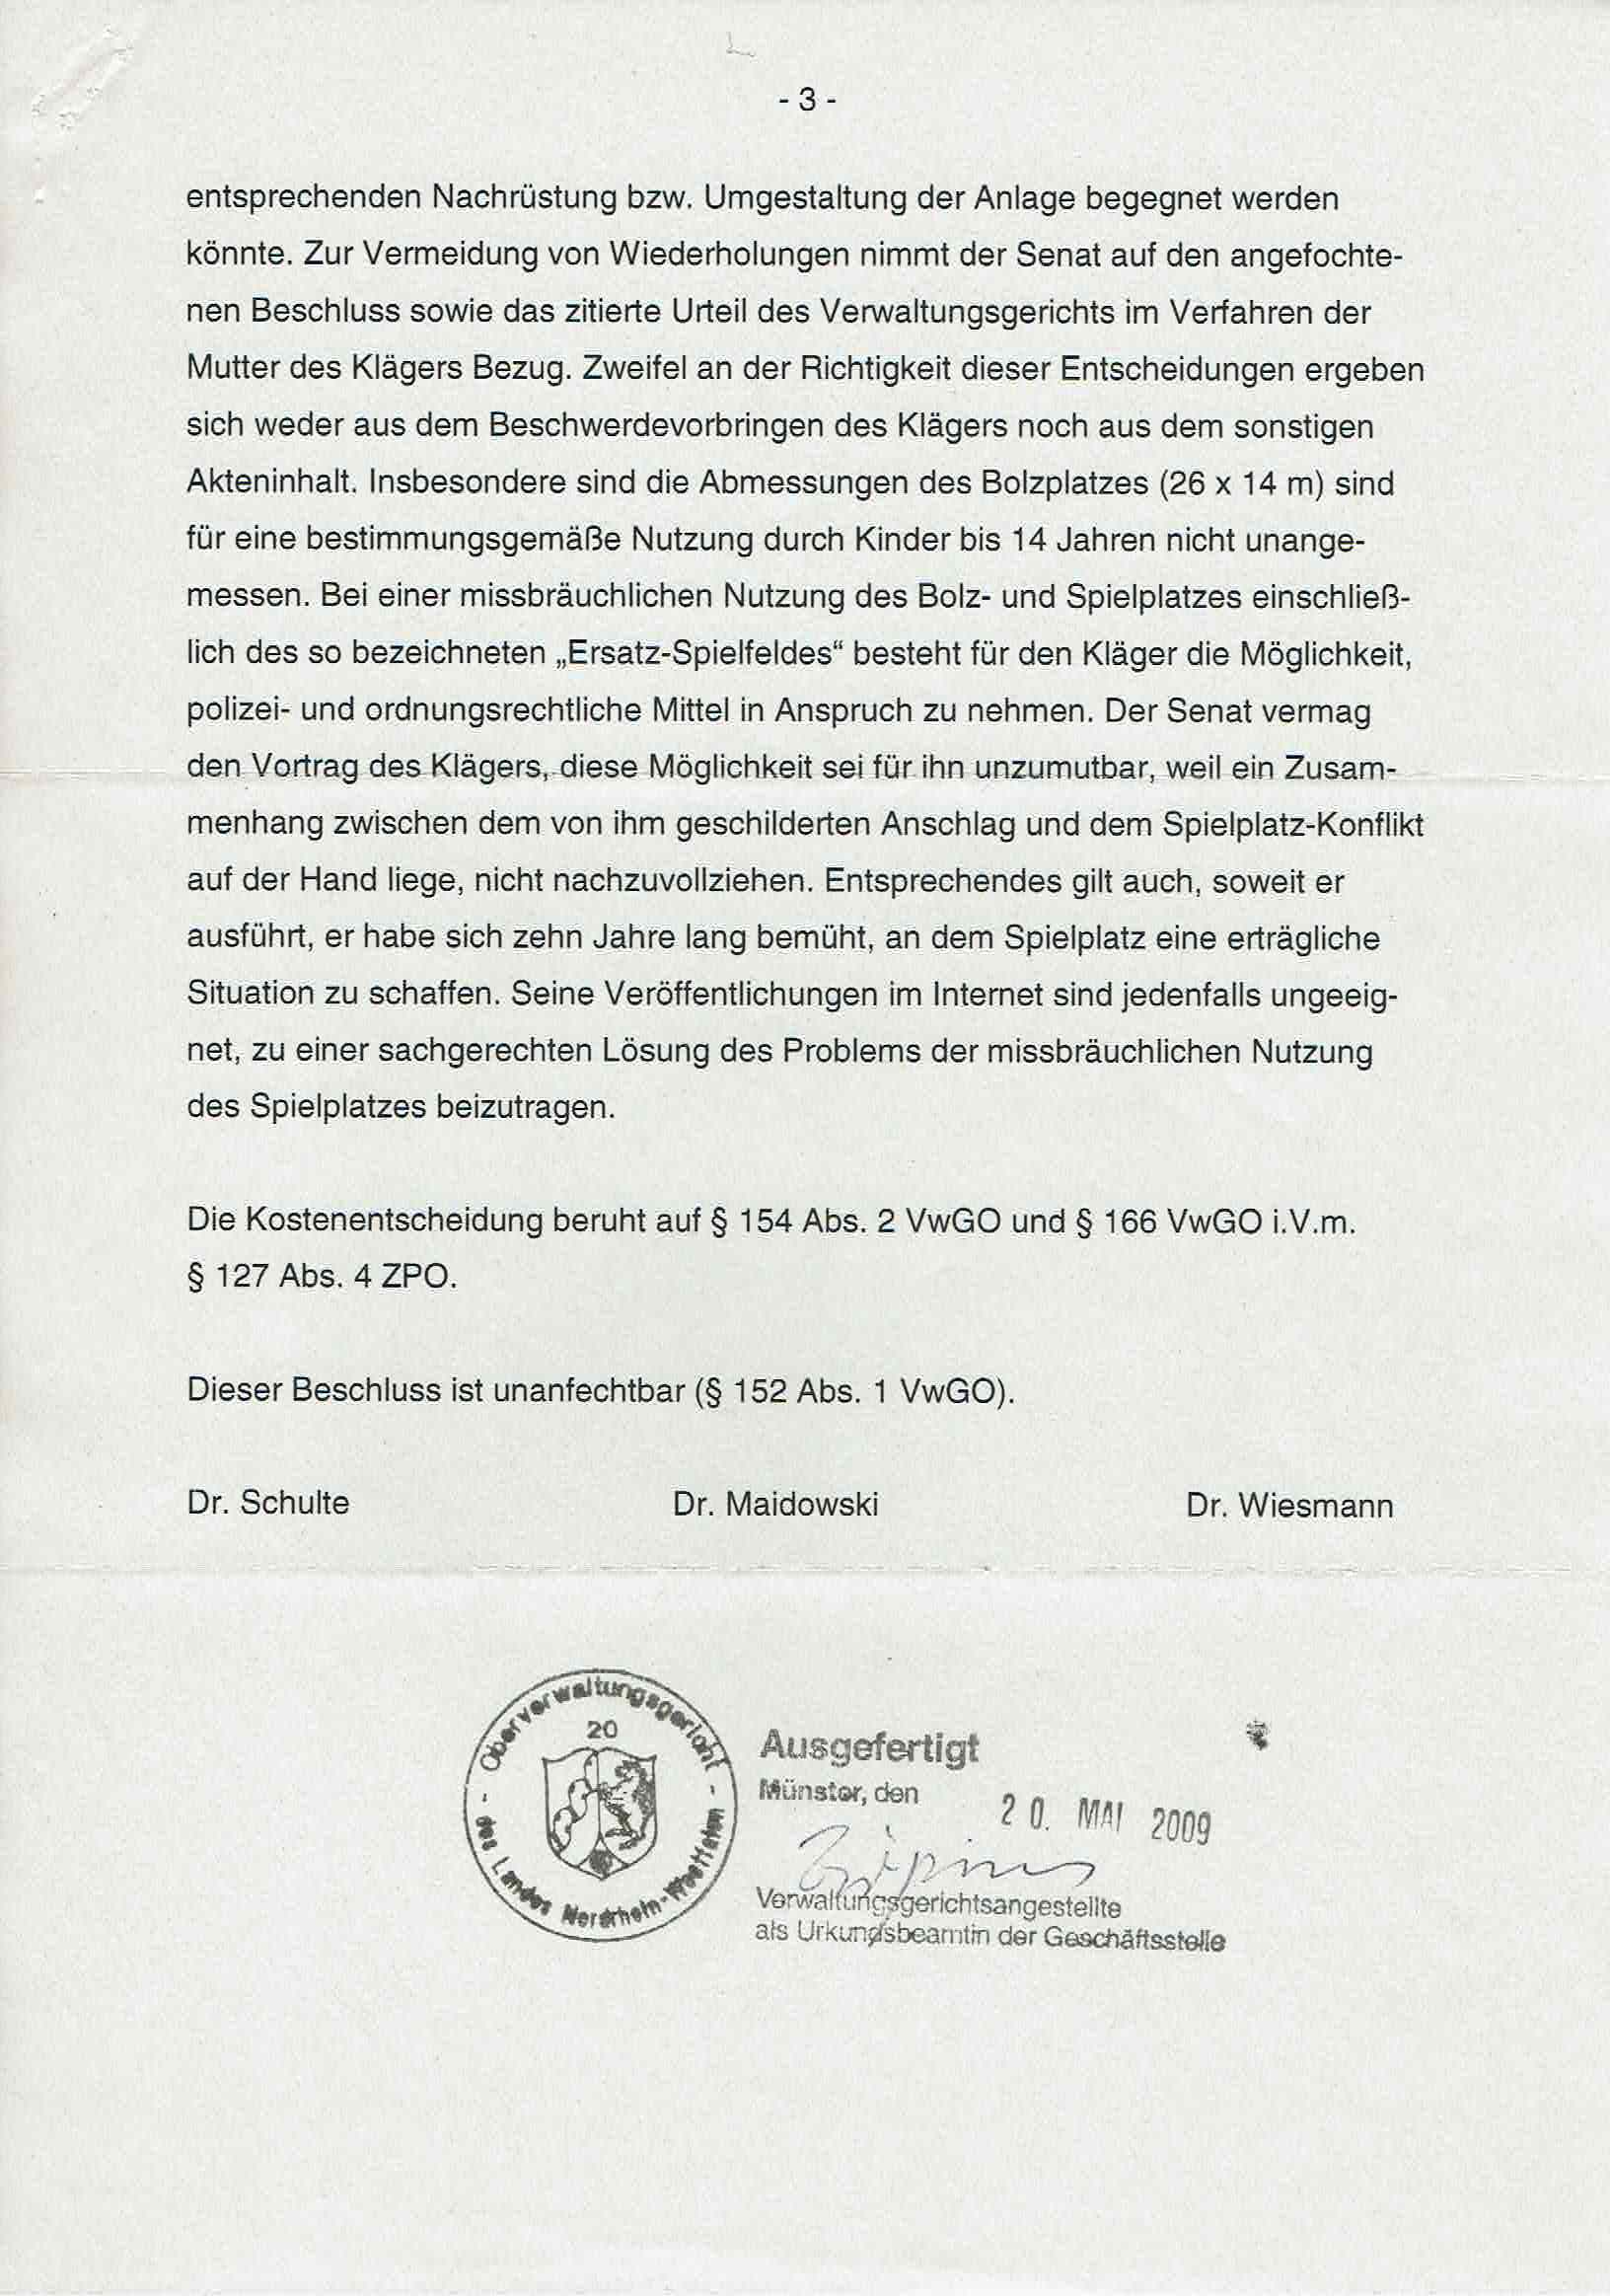 Bescheid der Richter Dr. Bernhard Schulte alias Bernd H. Schulte, Richter Dr. Ulrich Maidowski, Richter Dr. Martin Wiesmann über die Ablehnung von Prozeßkostenhilfe vom 18.05.2009, S. 3